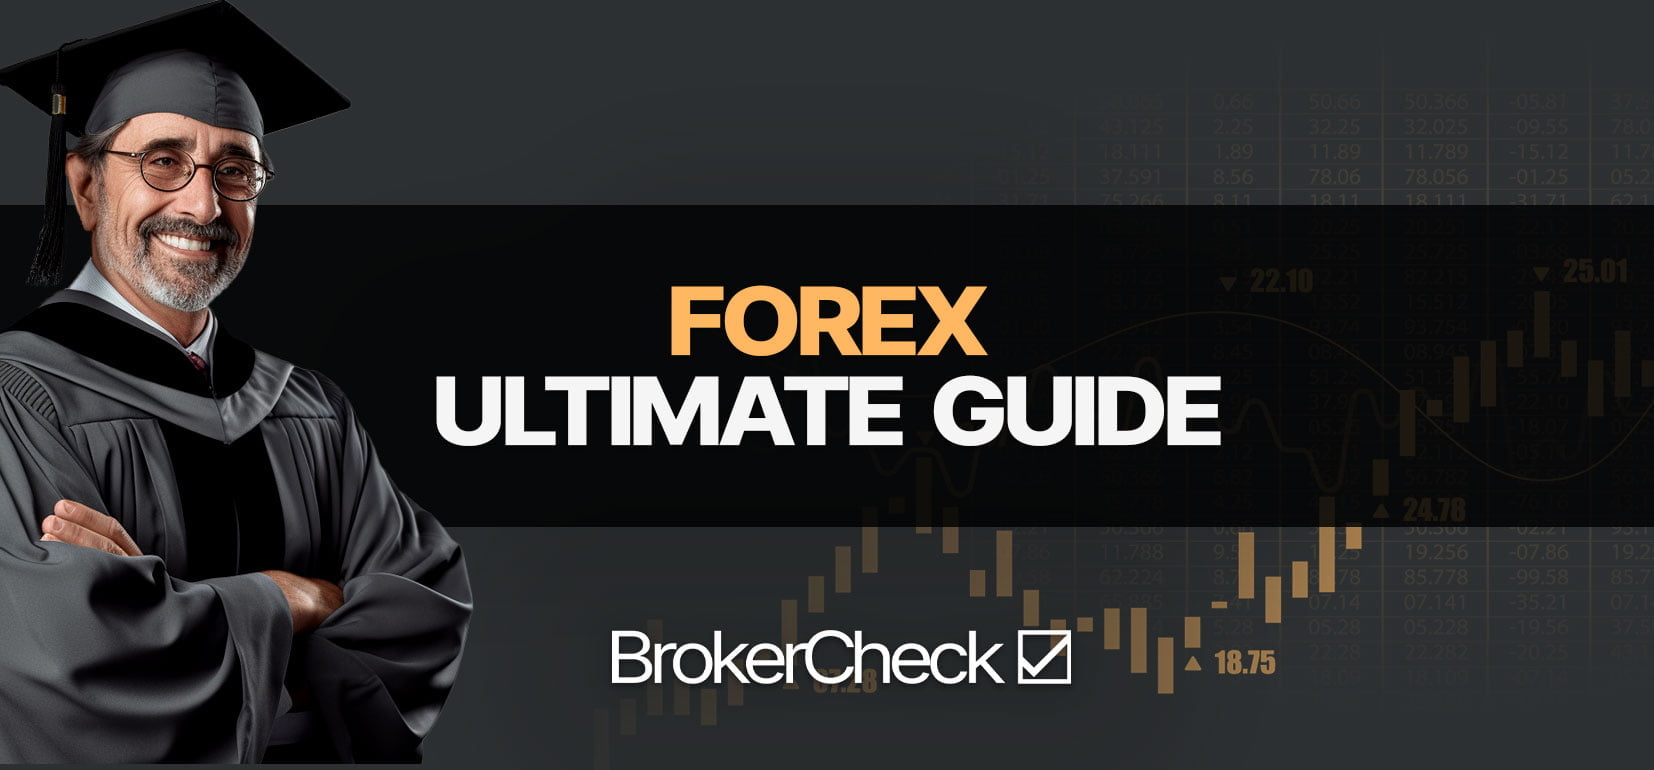 Forex: Guide de trading ultime pour débutant